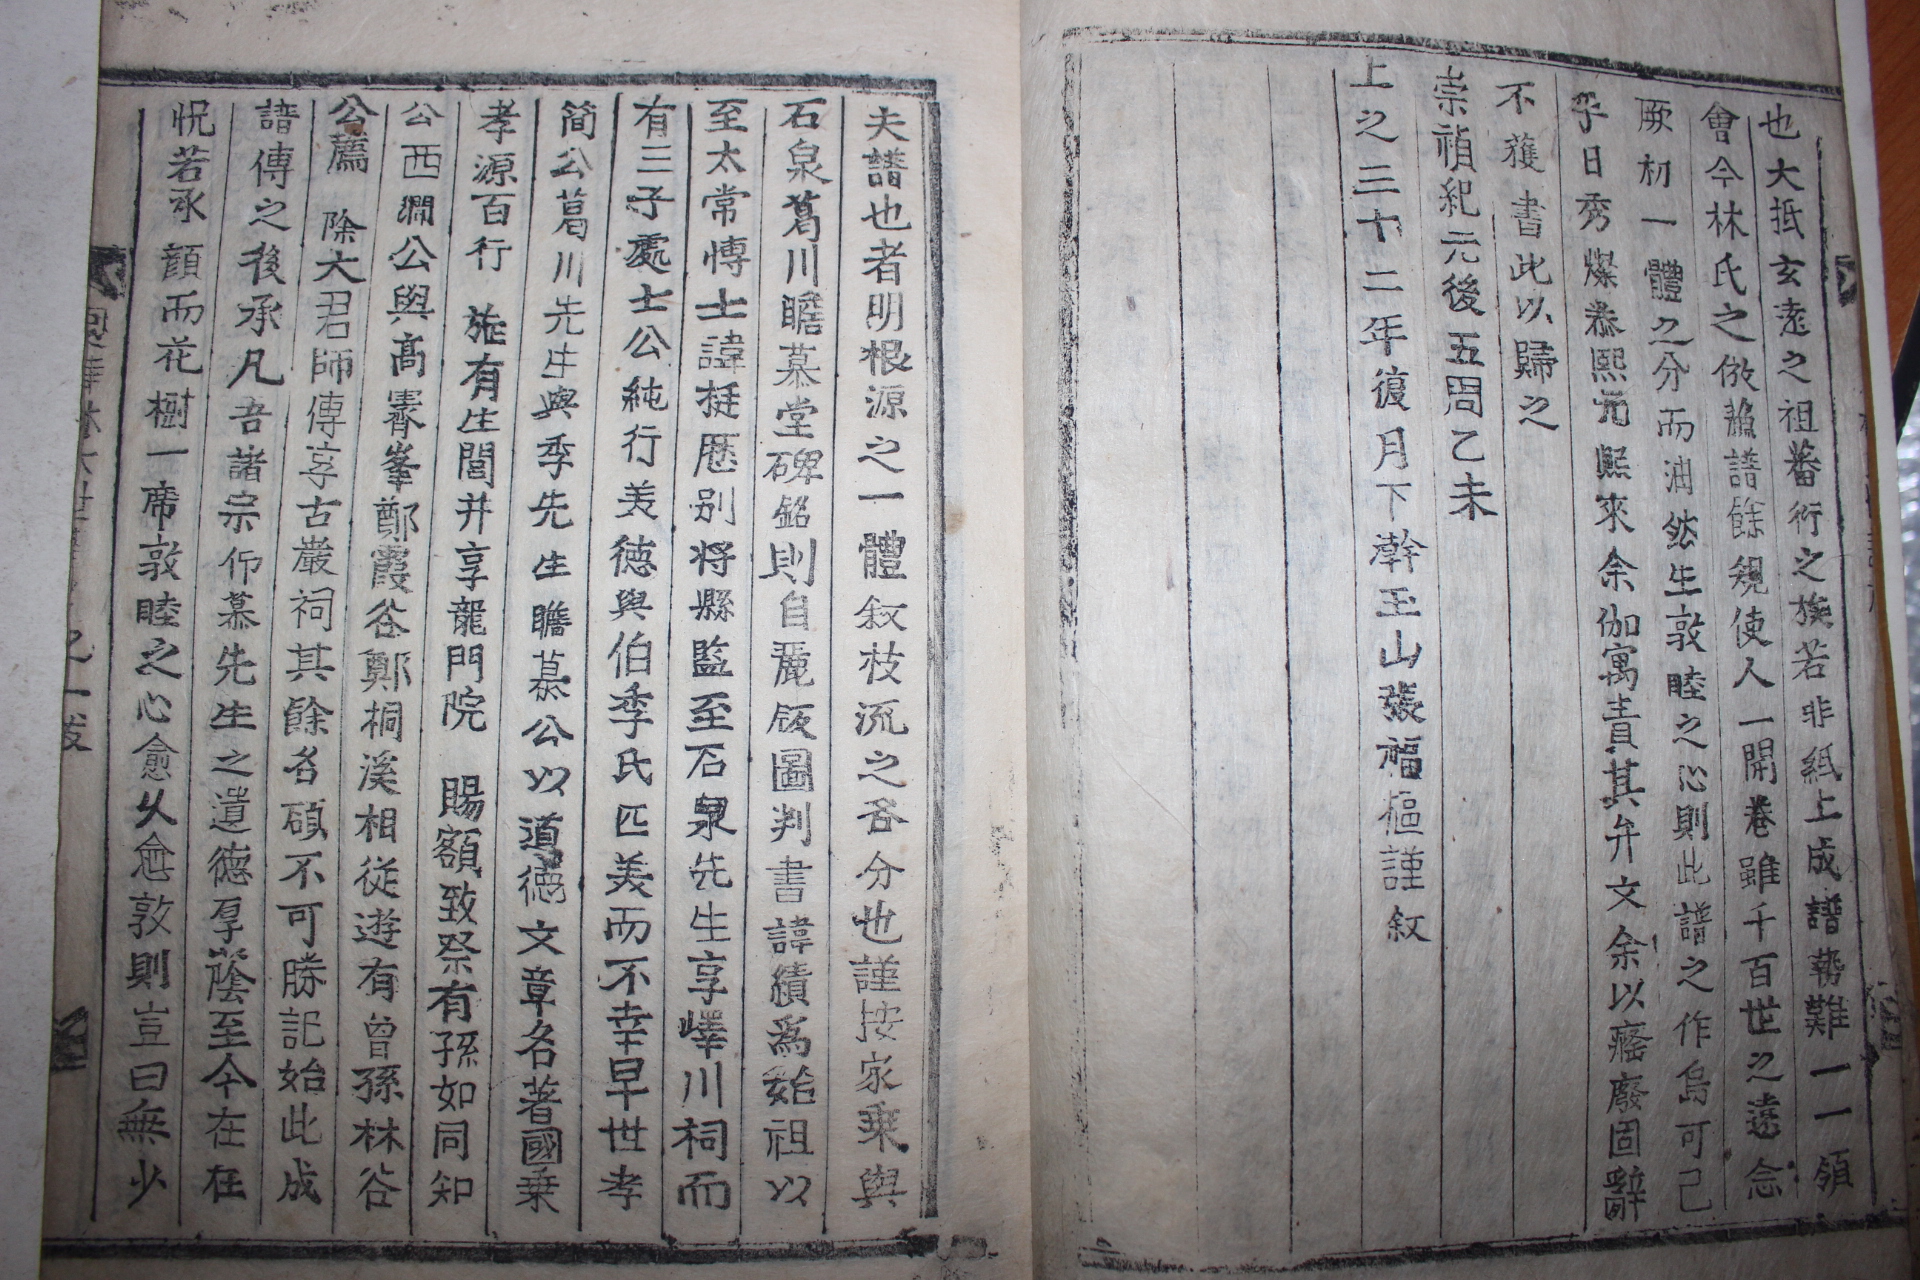 1895년 목활자본 은진임씨세보(恩津林氏世譜) 6권6책완질